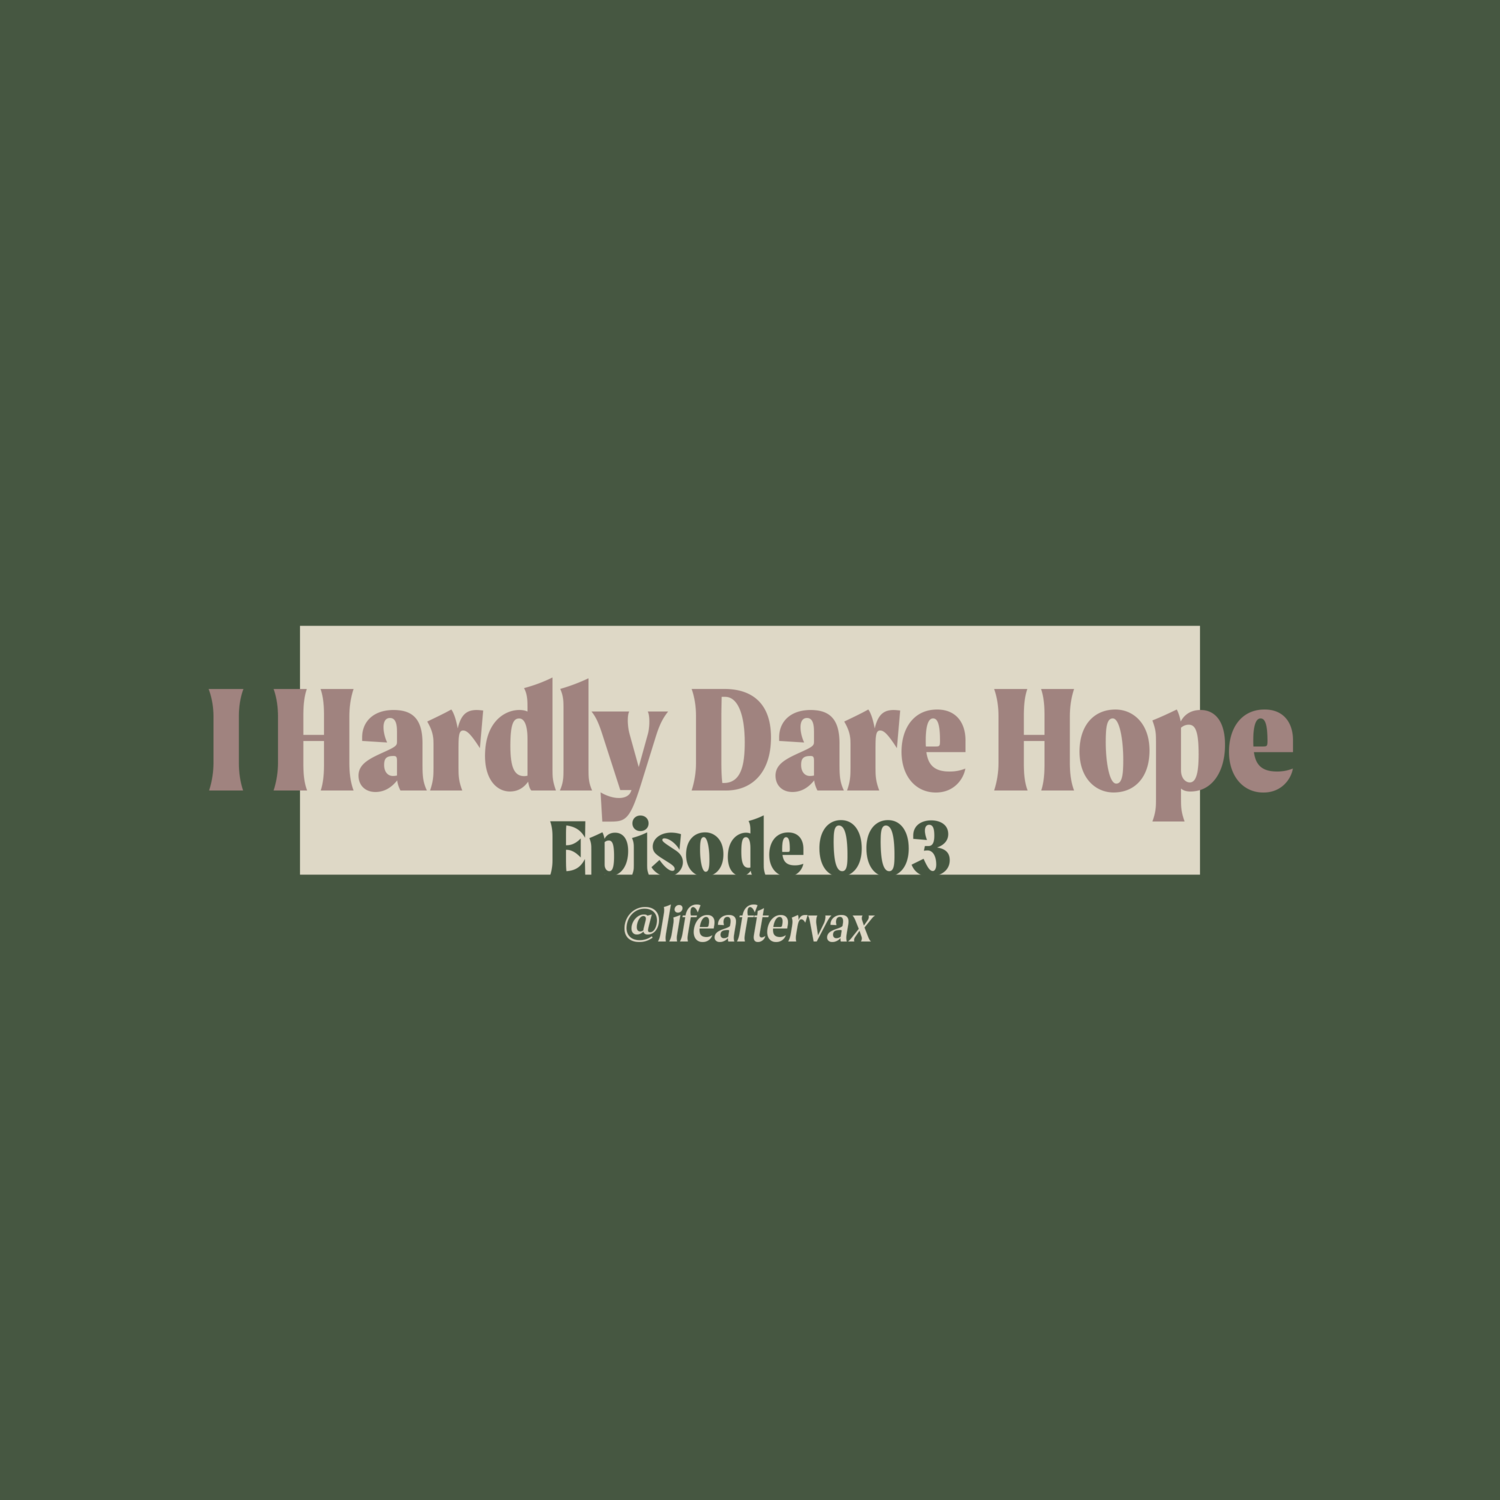 Episode 003 - I Hardly Dare Hope